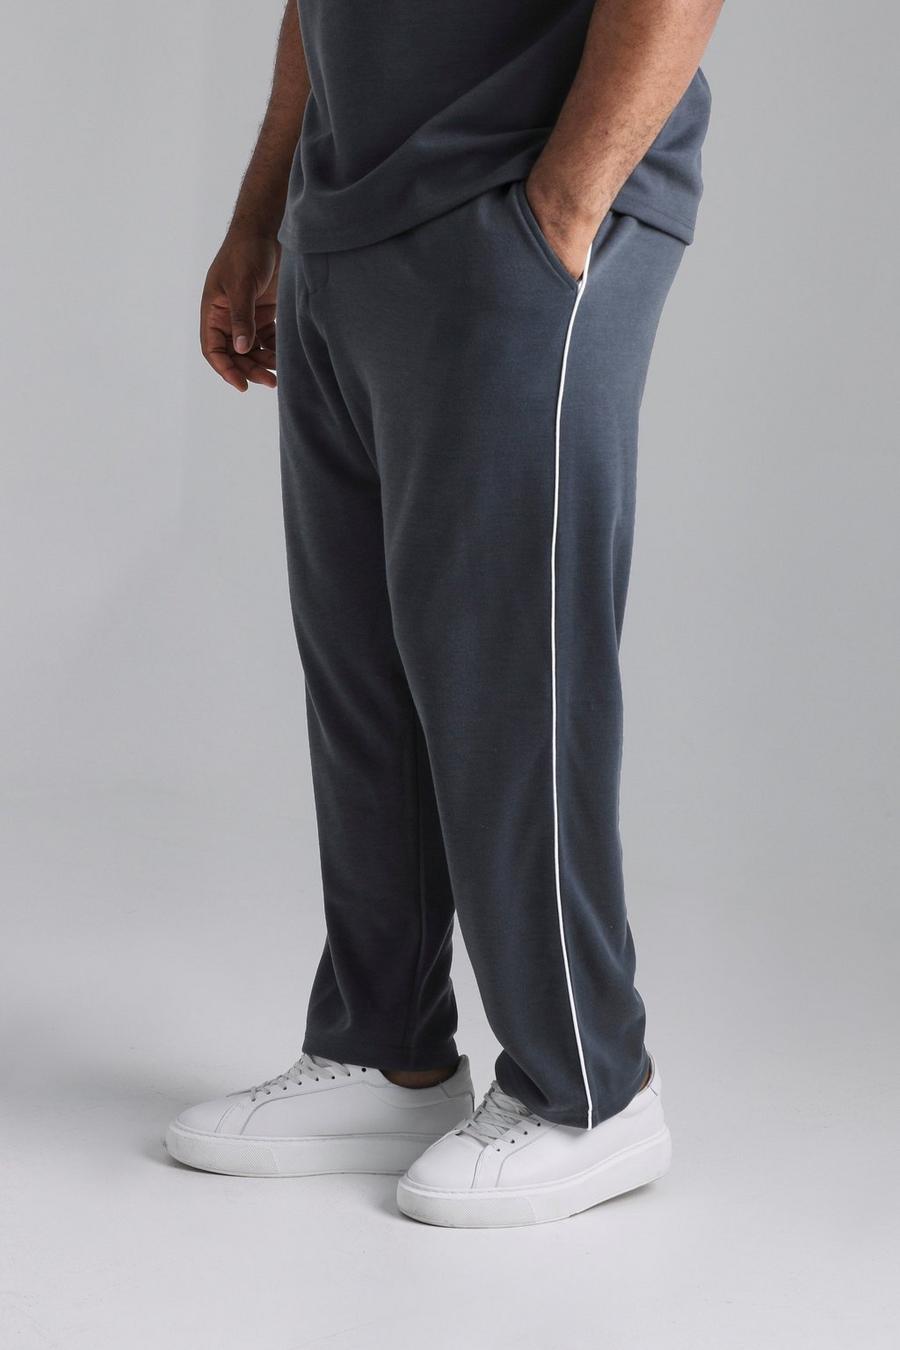 Pantaloni affusolati Plus Size con cordoncino, Dark grey grigio